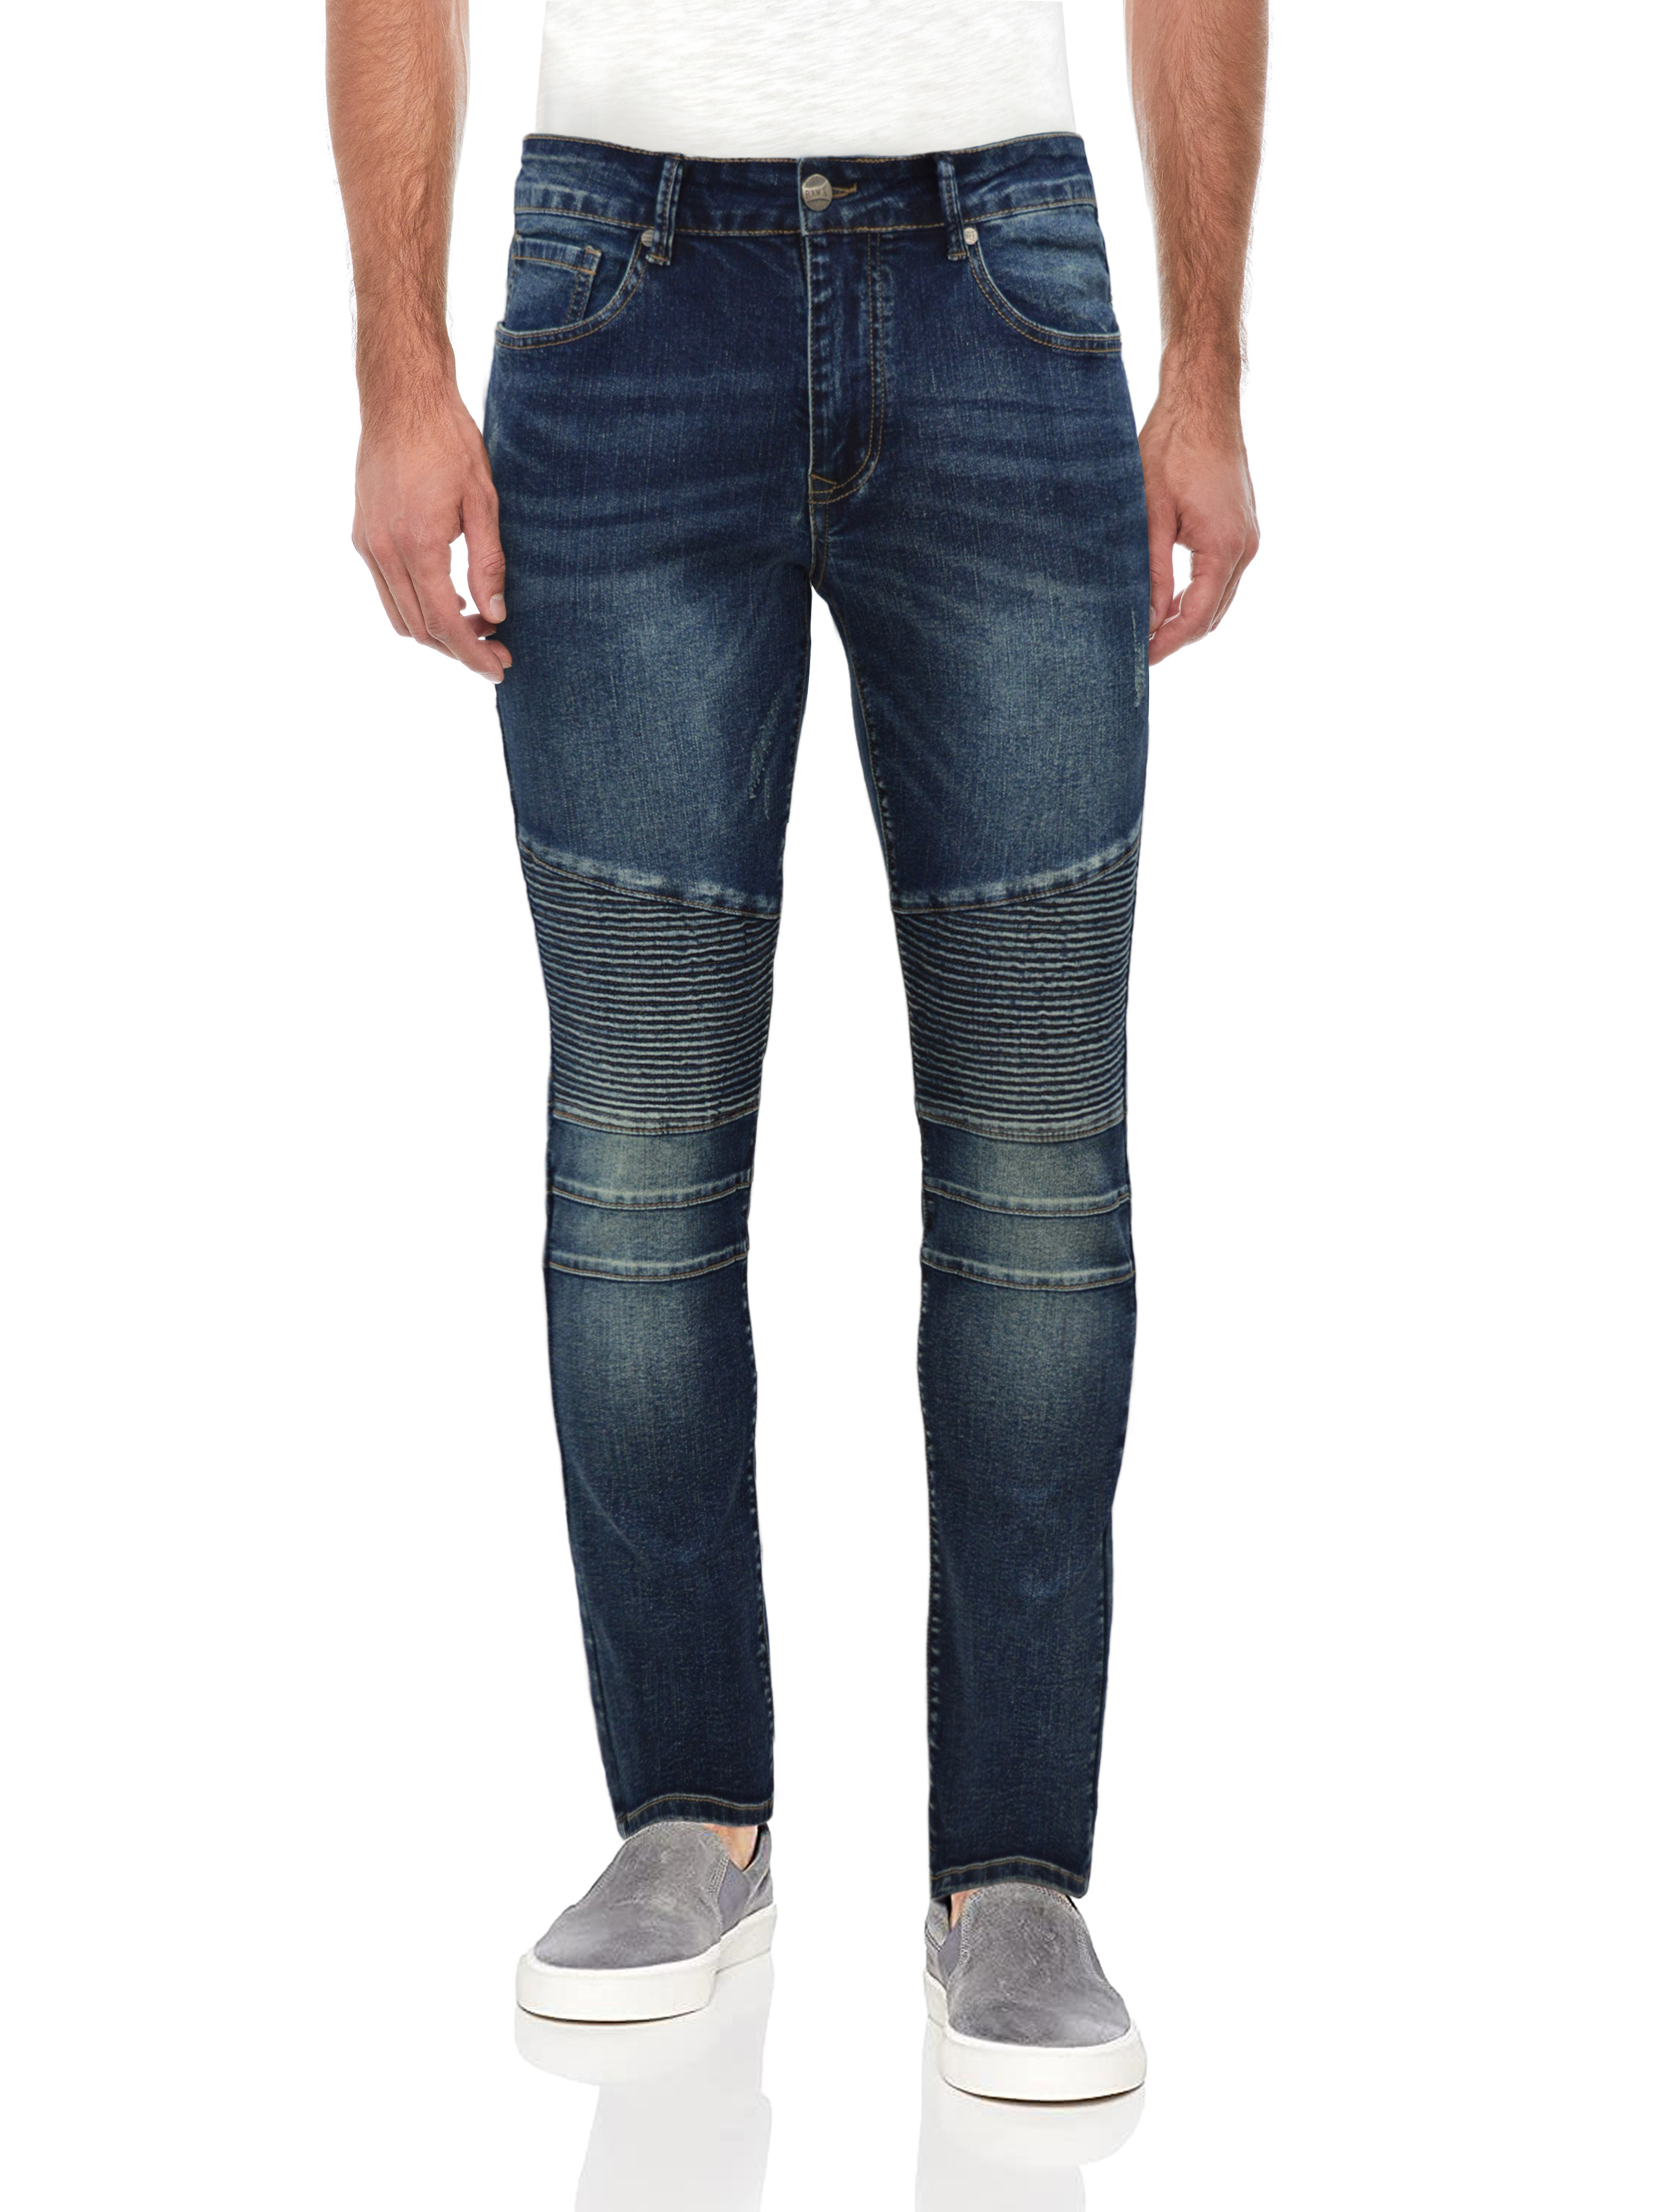 RAW X Men's Slim Fit Skinny Biker Jean, Comfy Flex Stretch Moto Wash Rip Distressed Denim Jeans Pants - image 1 of 5